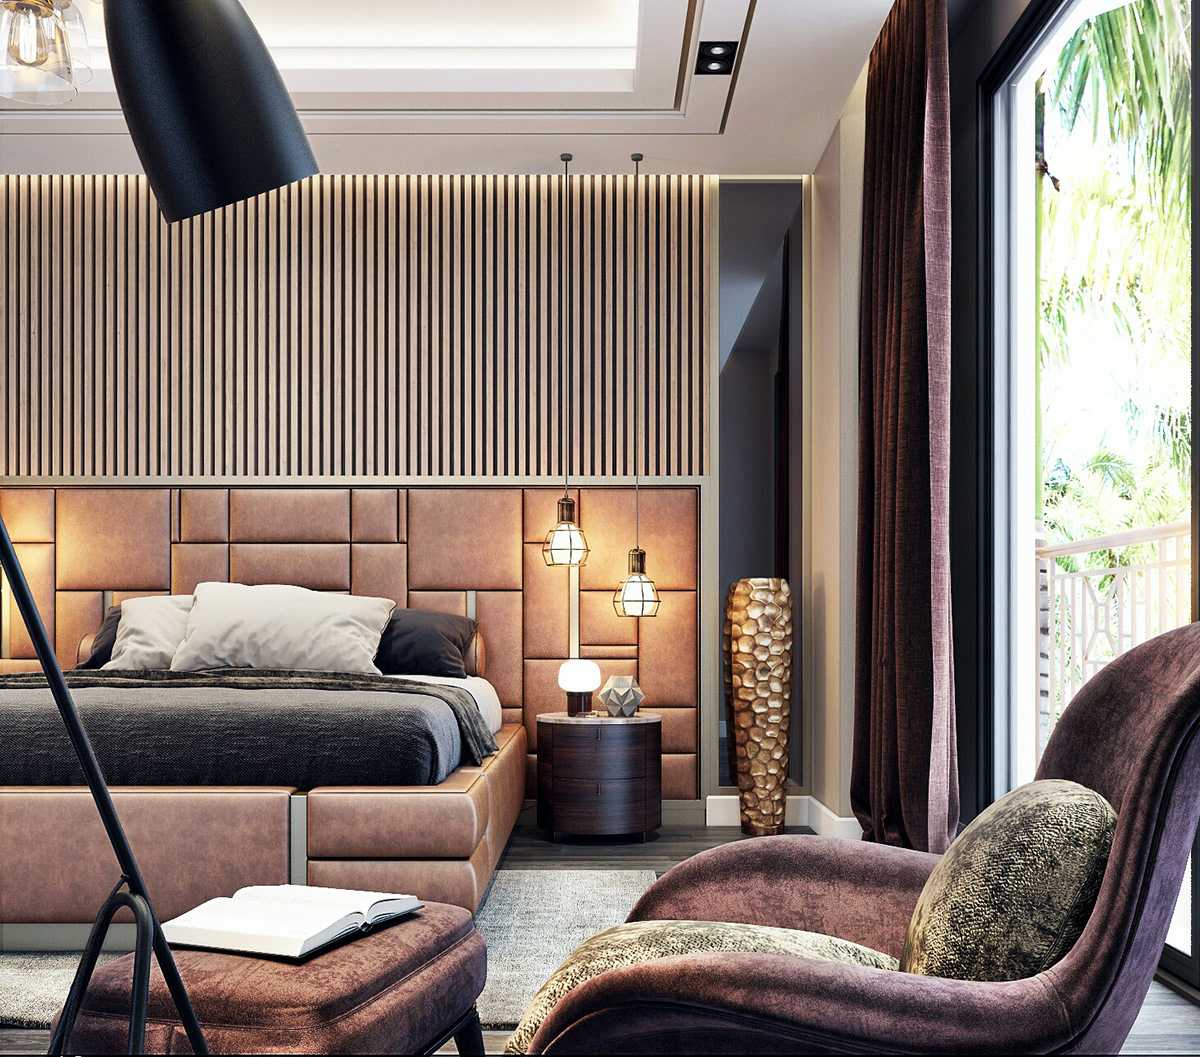 Дизайн спальни 2020 года: красивые и уютные варианты оформления спальни. 170 фото актуальных трендов